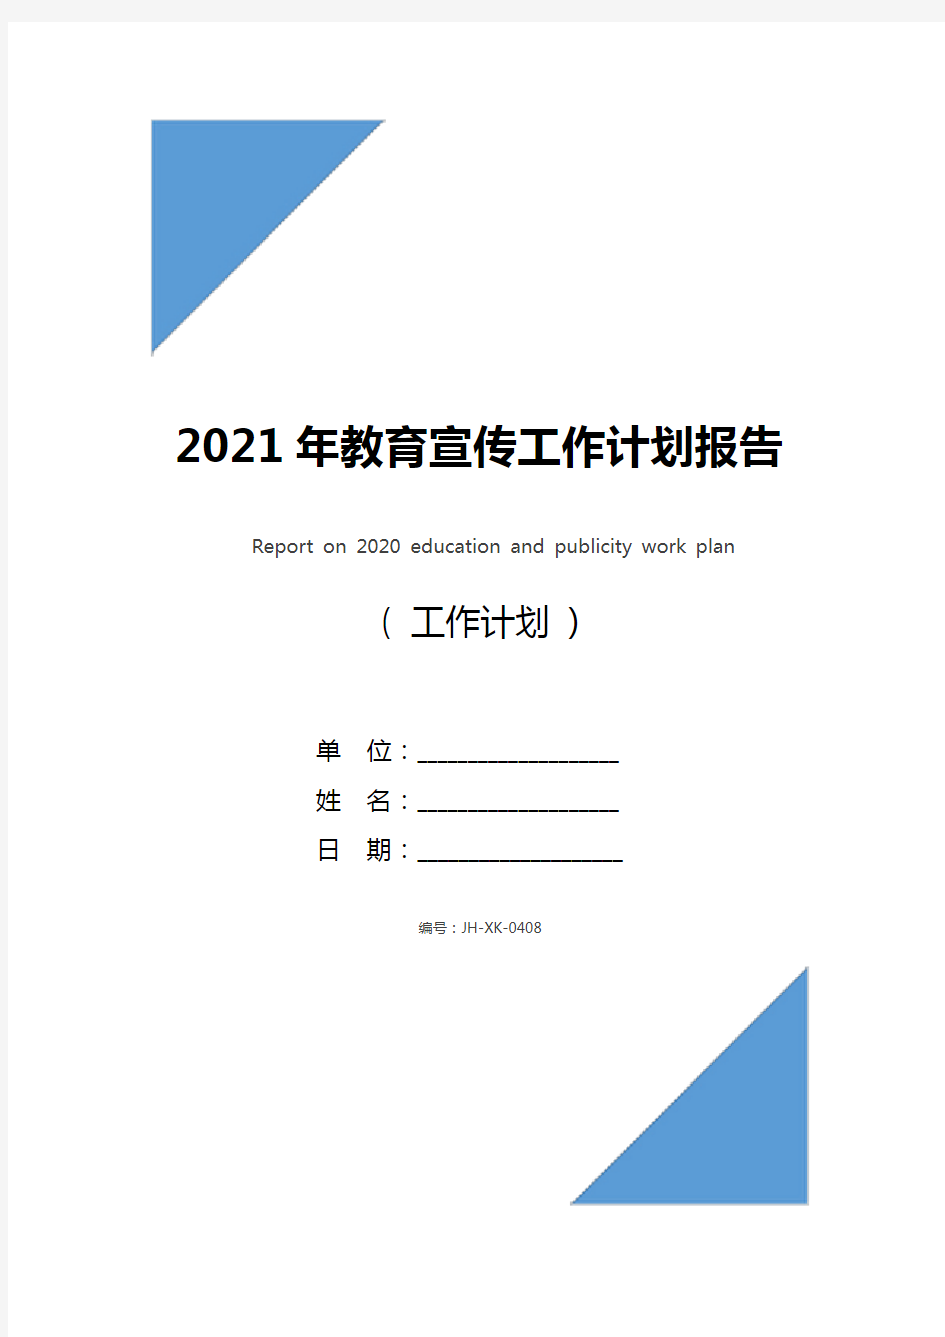 2021年教育宣传工作计划报告(通用版)